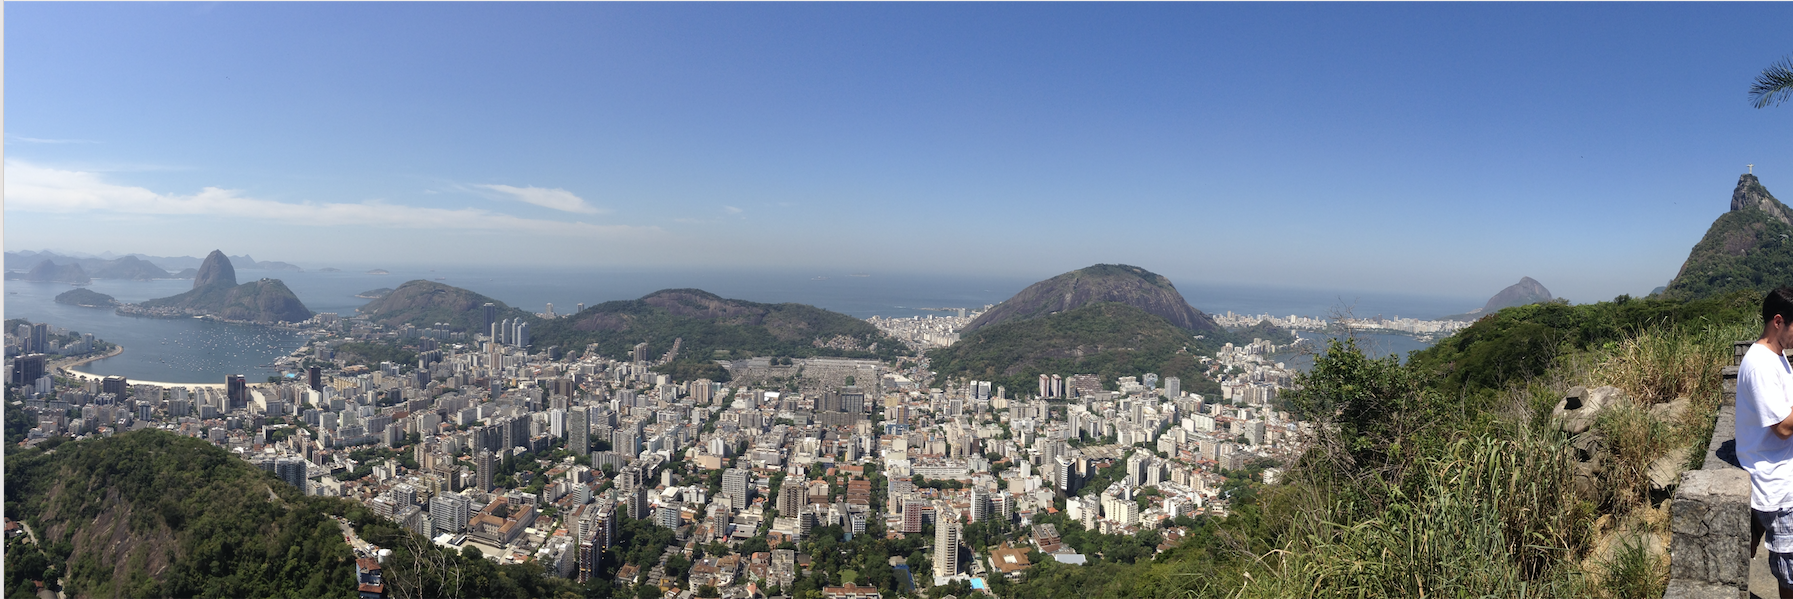 Rio_De_Janeiro_Scroll2